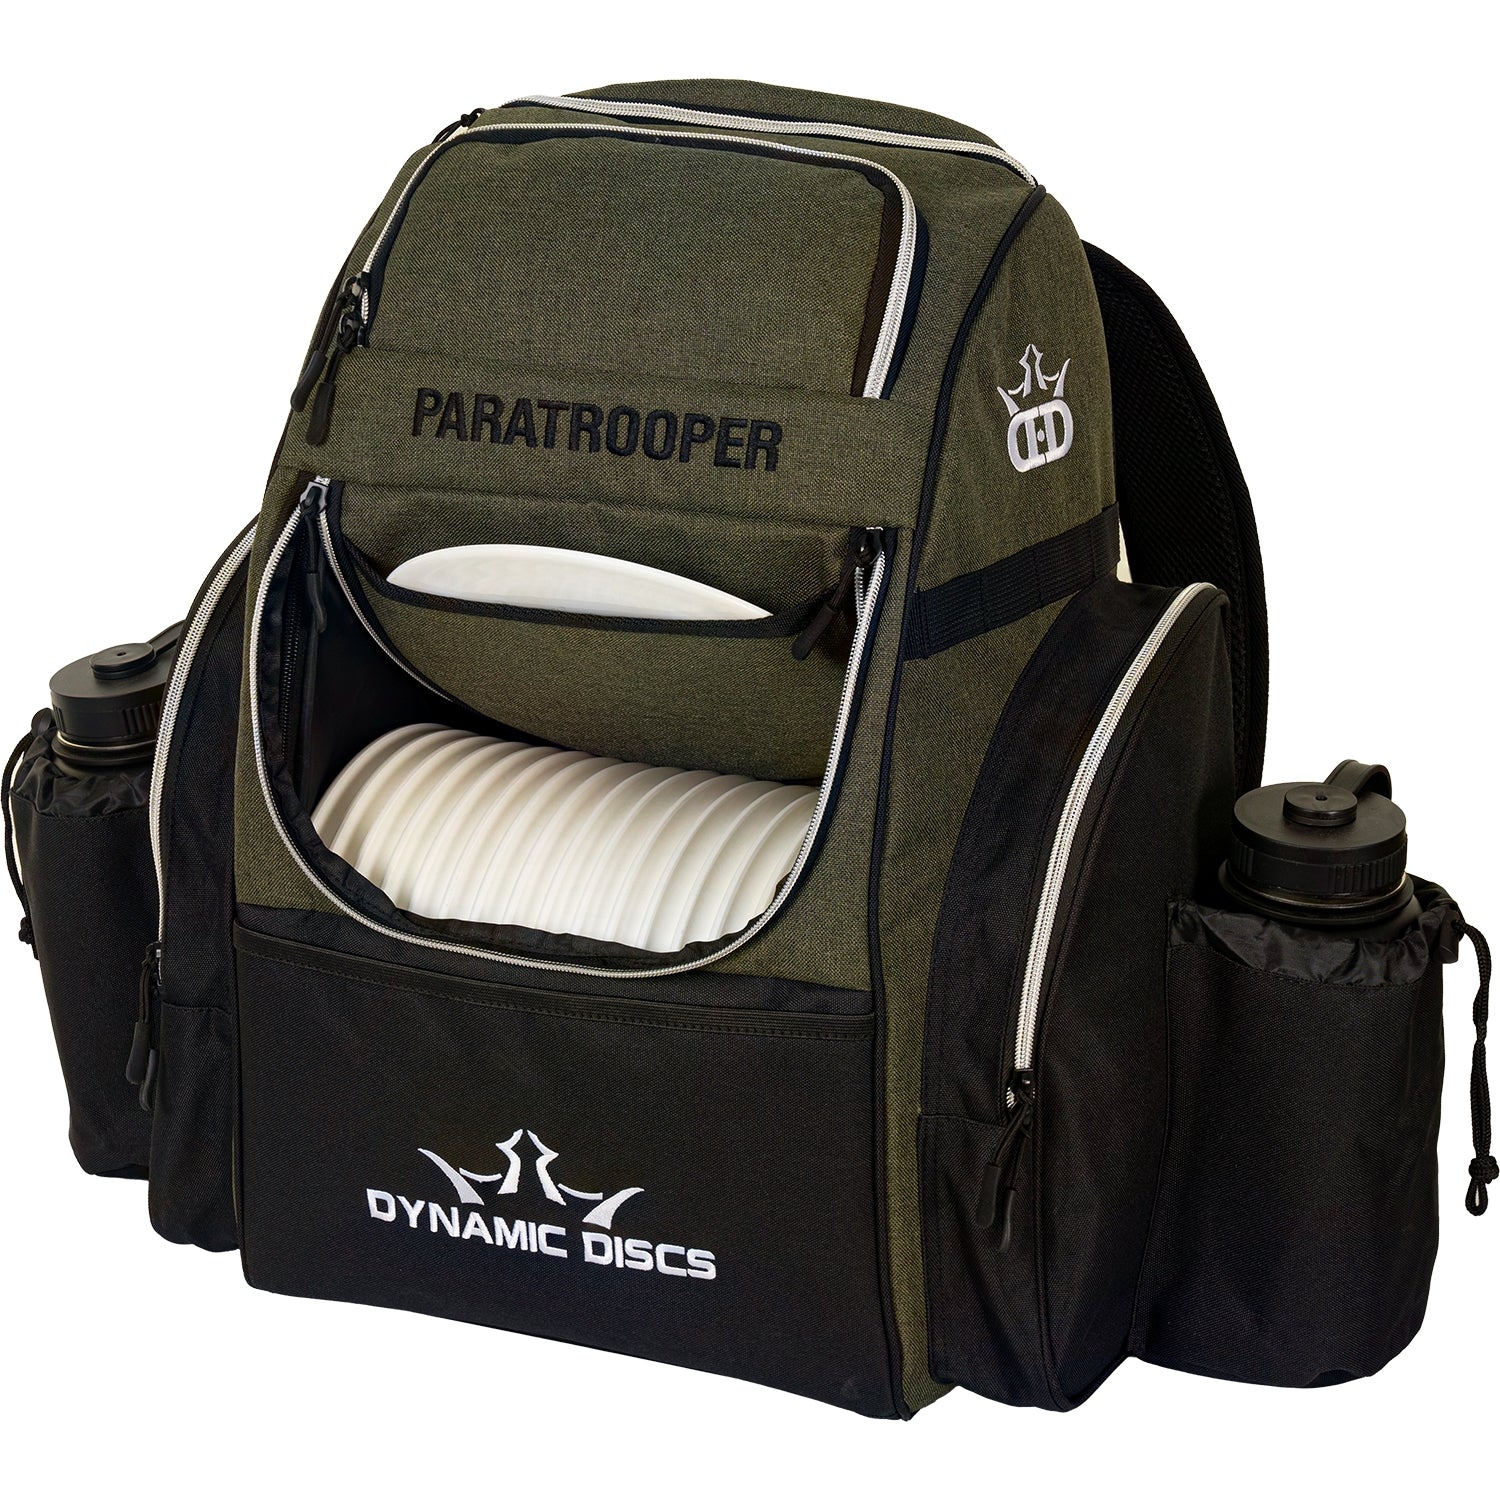 Dynamic Discs Paratrooper Backpack Disc Golf Bag